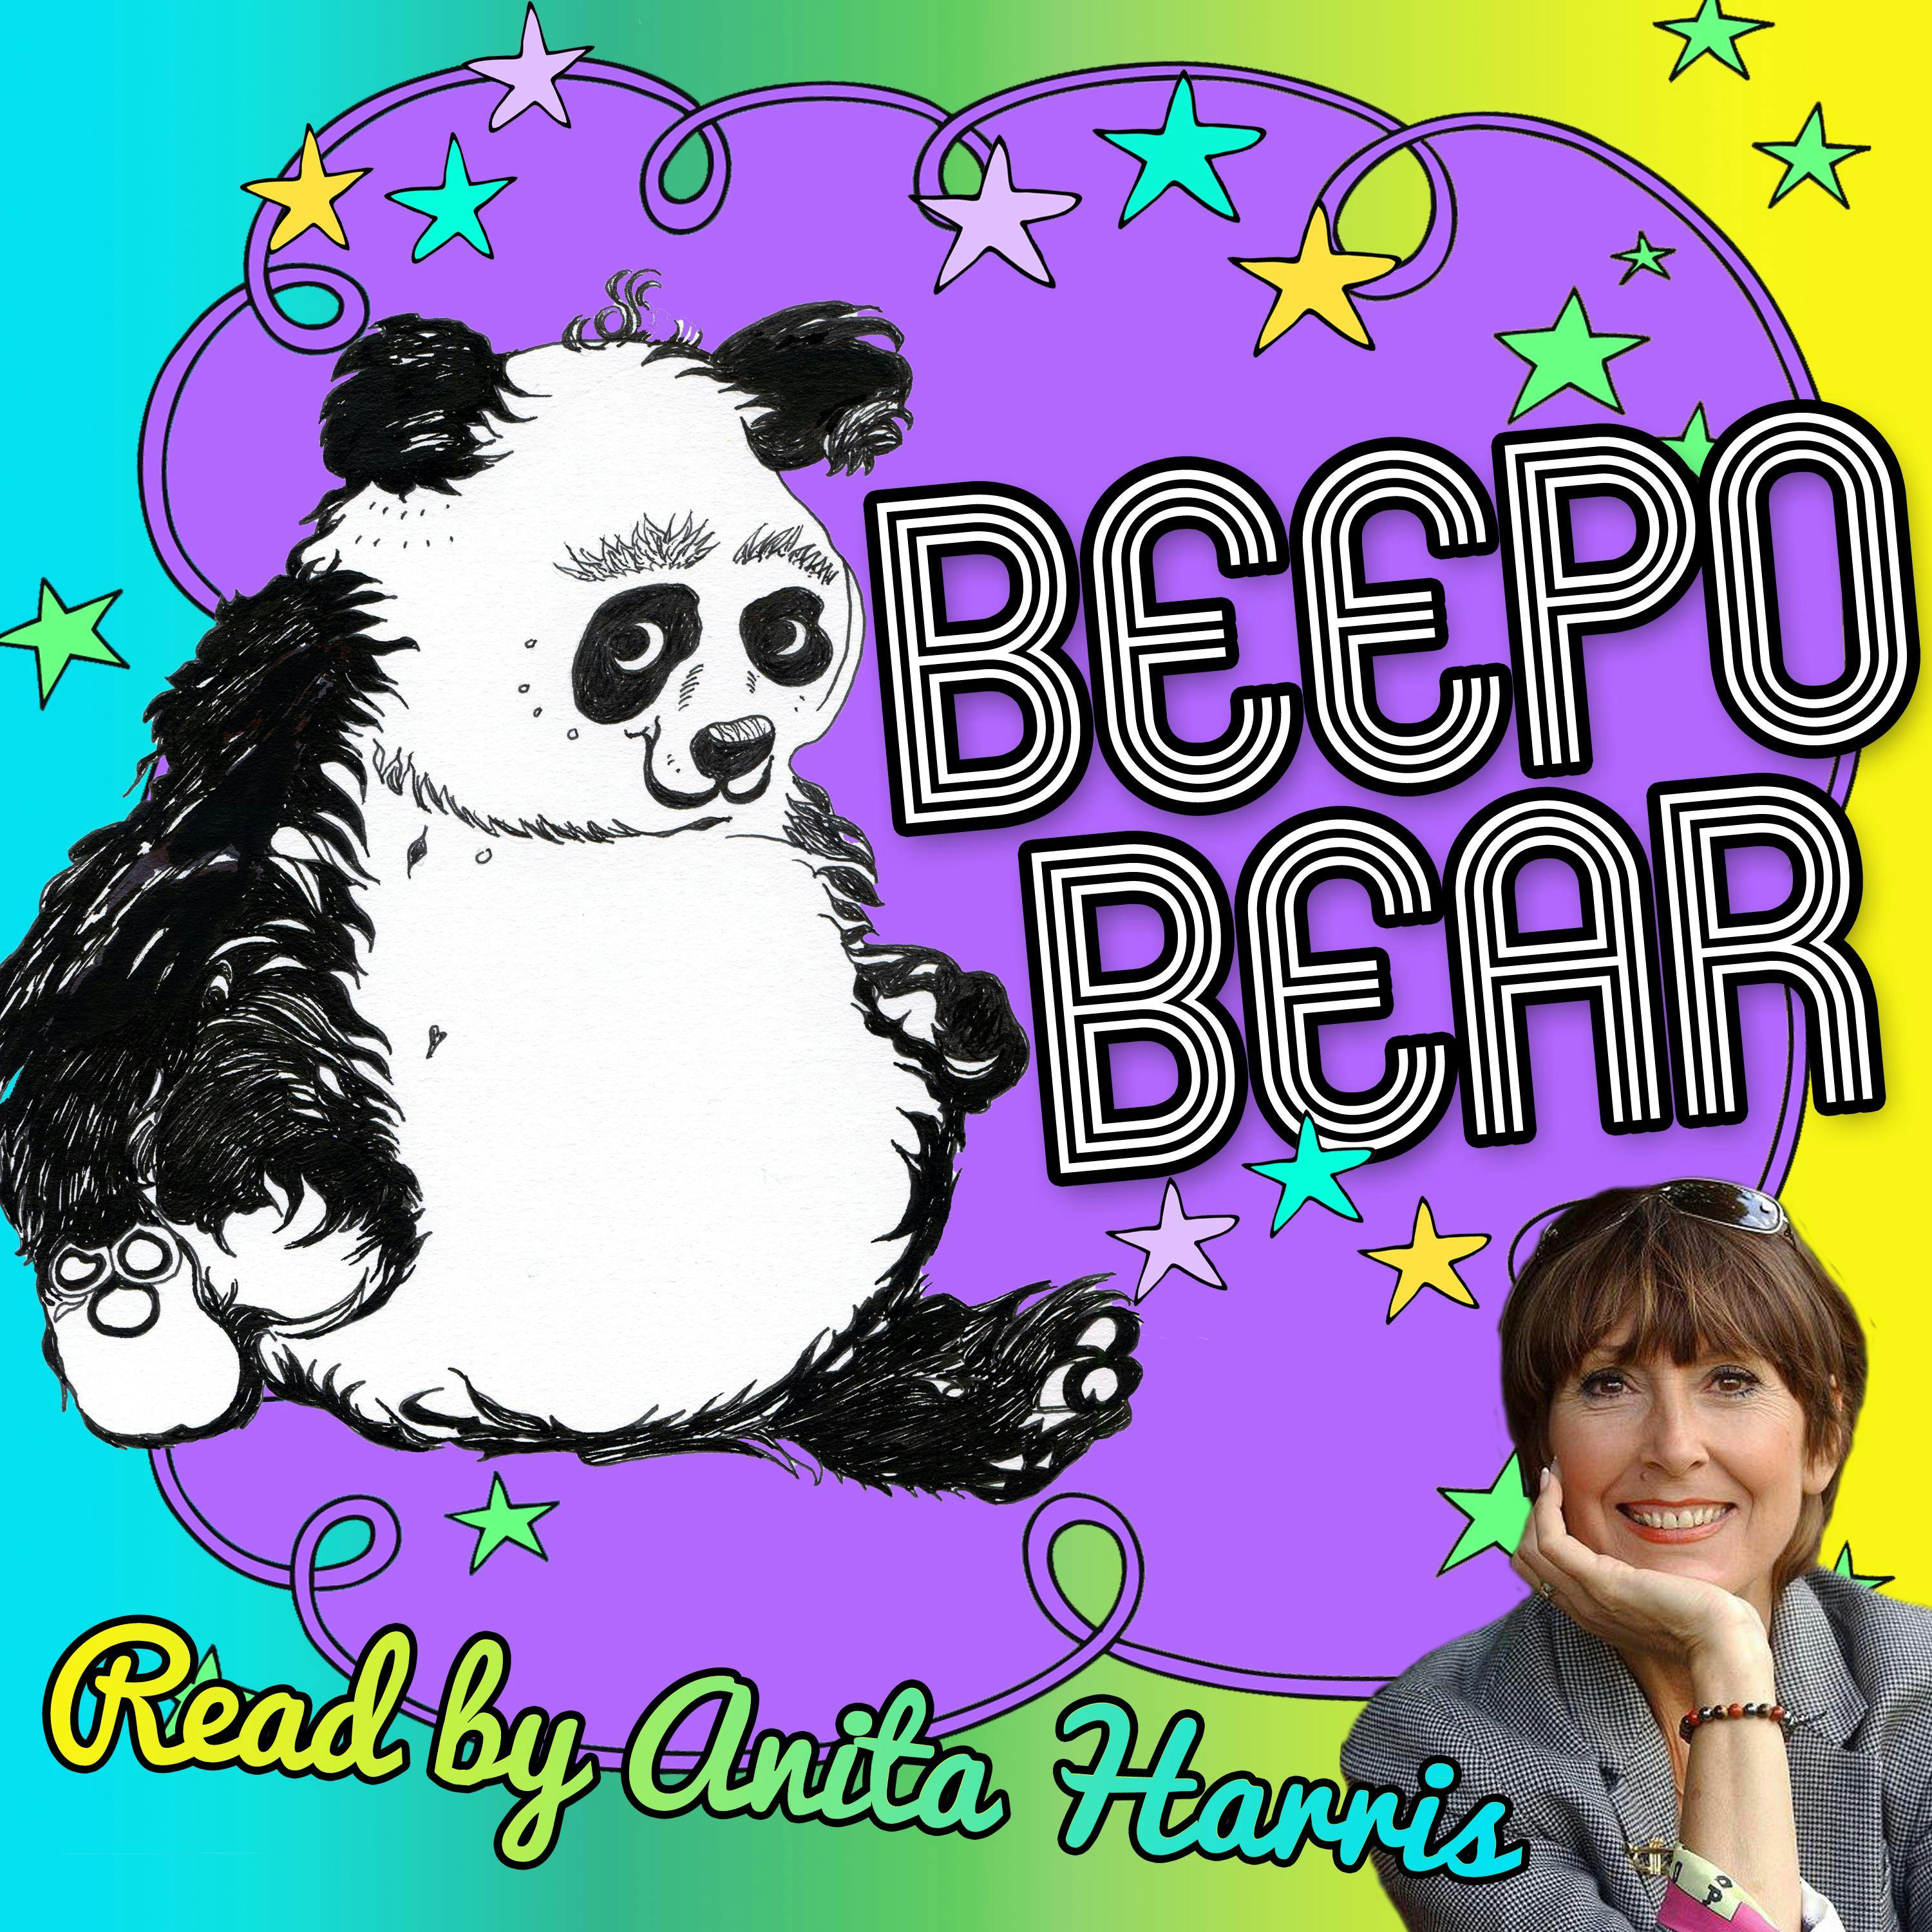 Beepo Bear - undefined